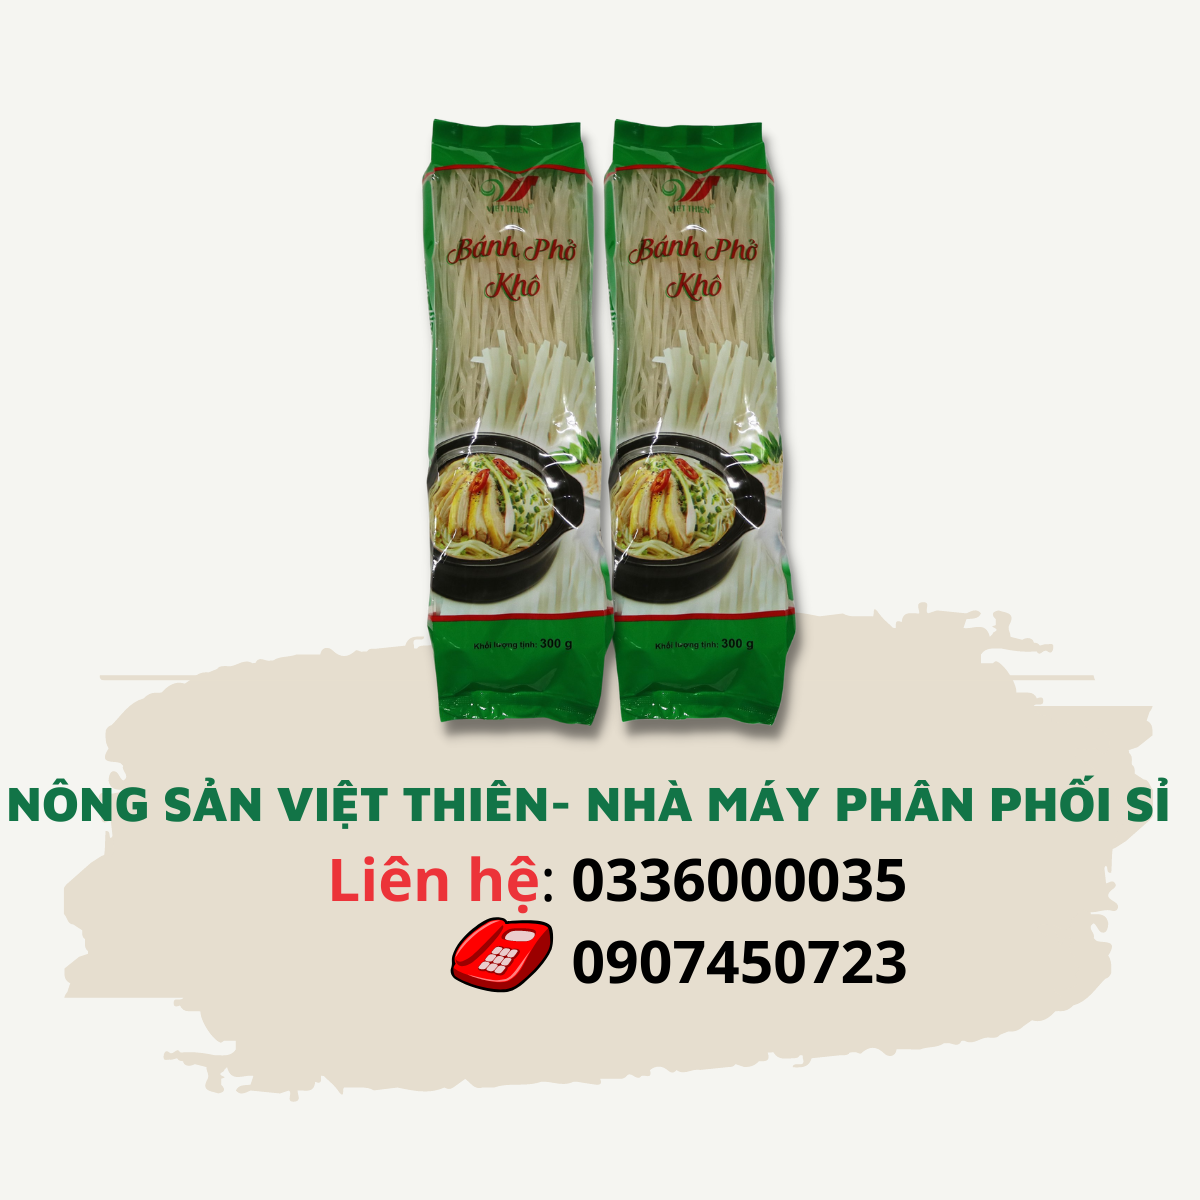 Phở Khô Việt Thiên 300g, nhà máy sản xuất và phân phối nông sản Việt Thiên, giá rẻ